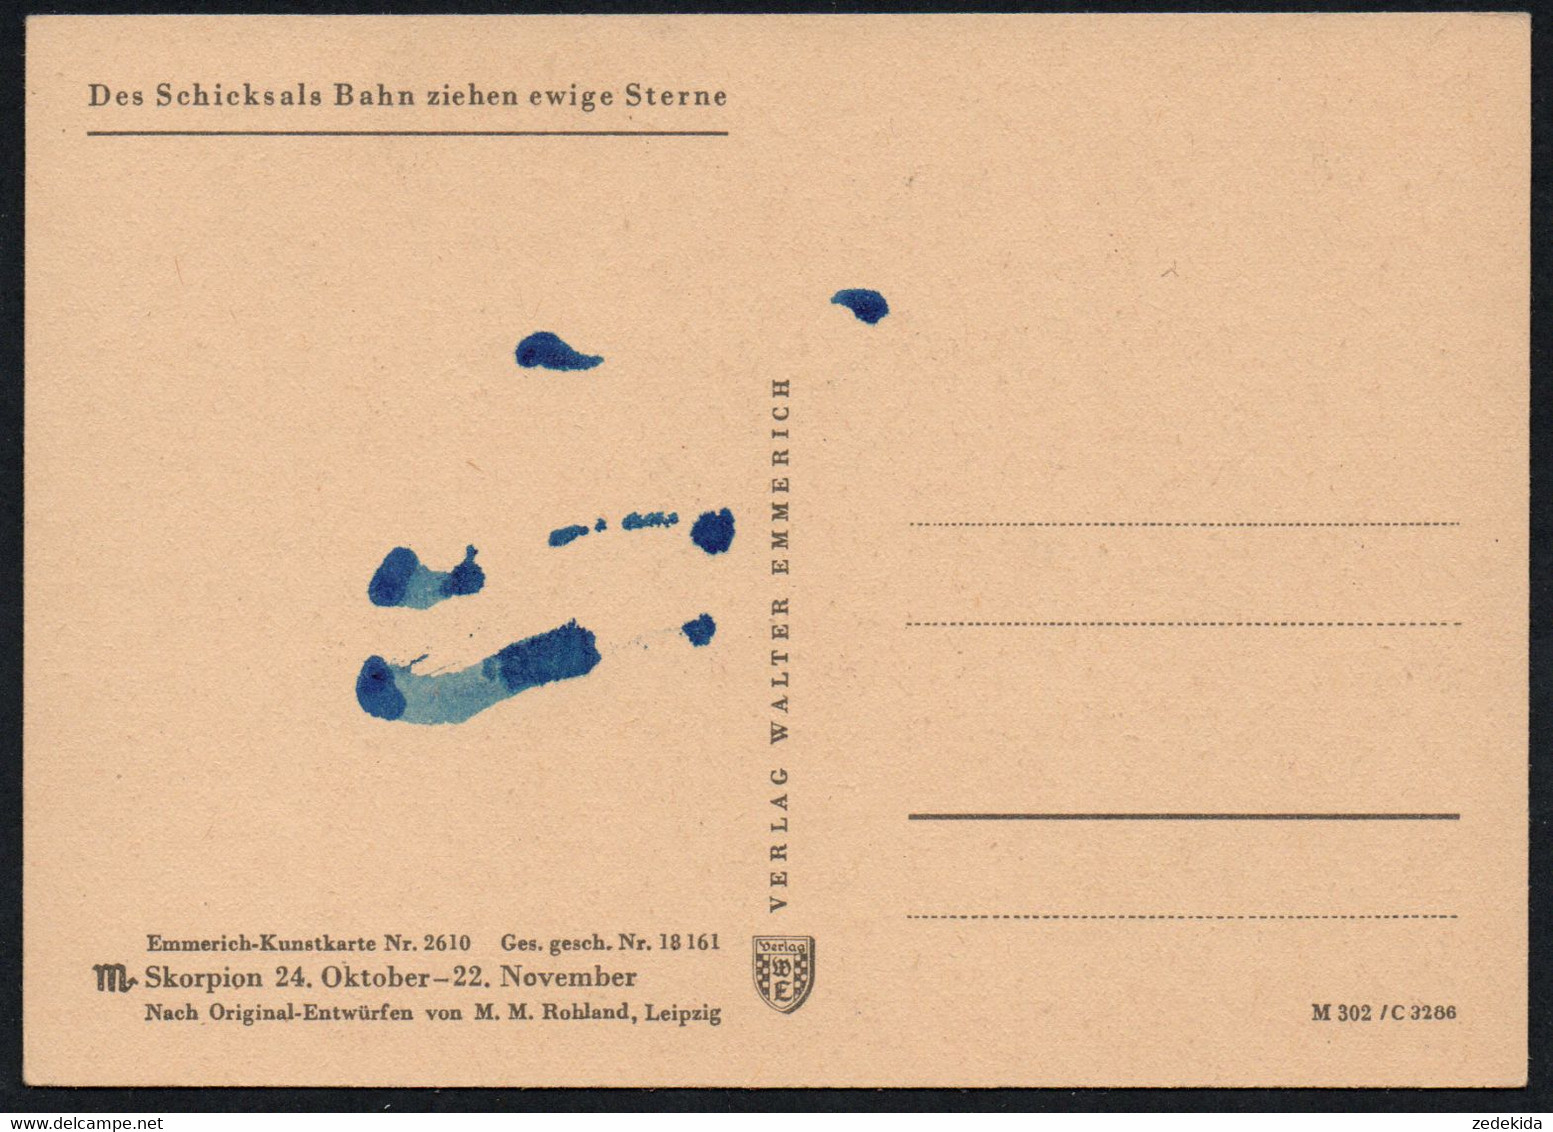 E8931 - Rohland M.M. Leipzig - Künstlerkarte Tierkreiszeichen Skorpion - Verlag Walter Emmerich Kunstkarte - Astronomie